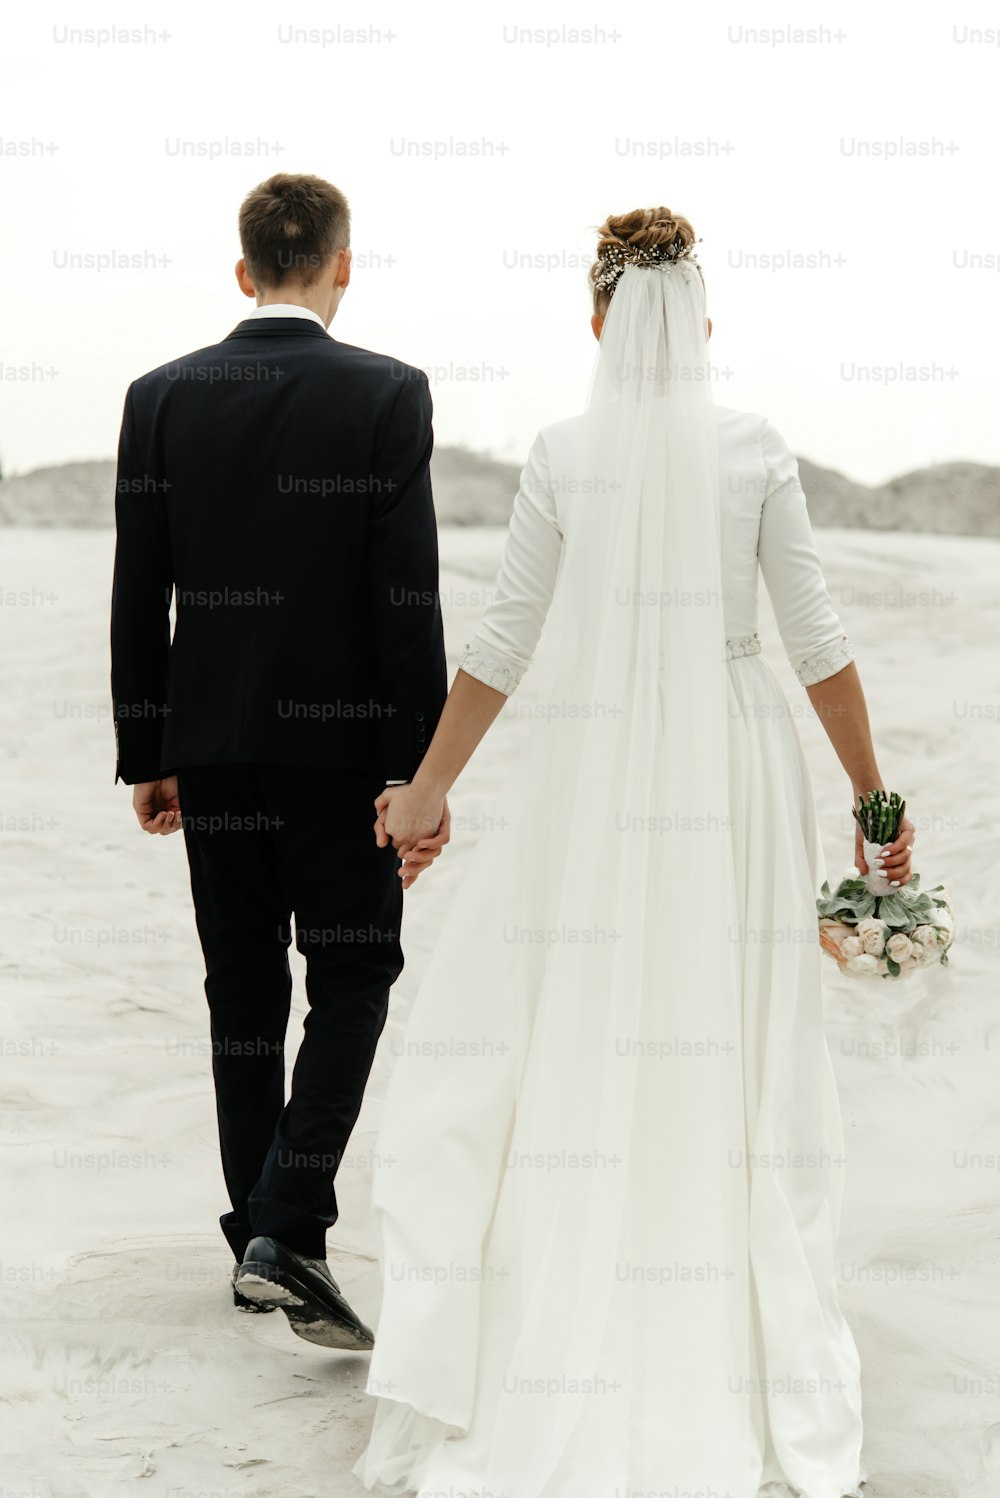 magnifique mariée et le marié marchant en se tenant la main et en se regardant l’un l’autre au lac de plage de sable, de vraies émotions